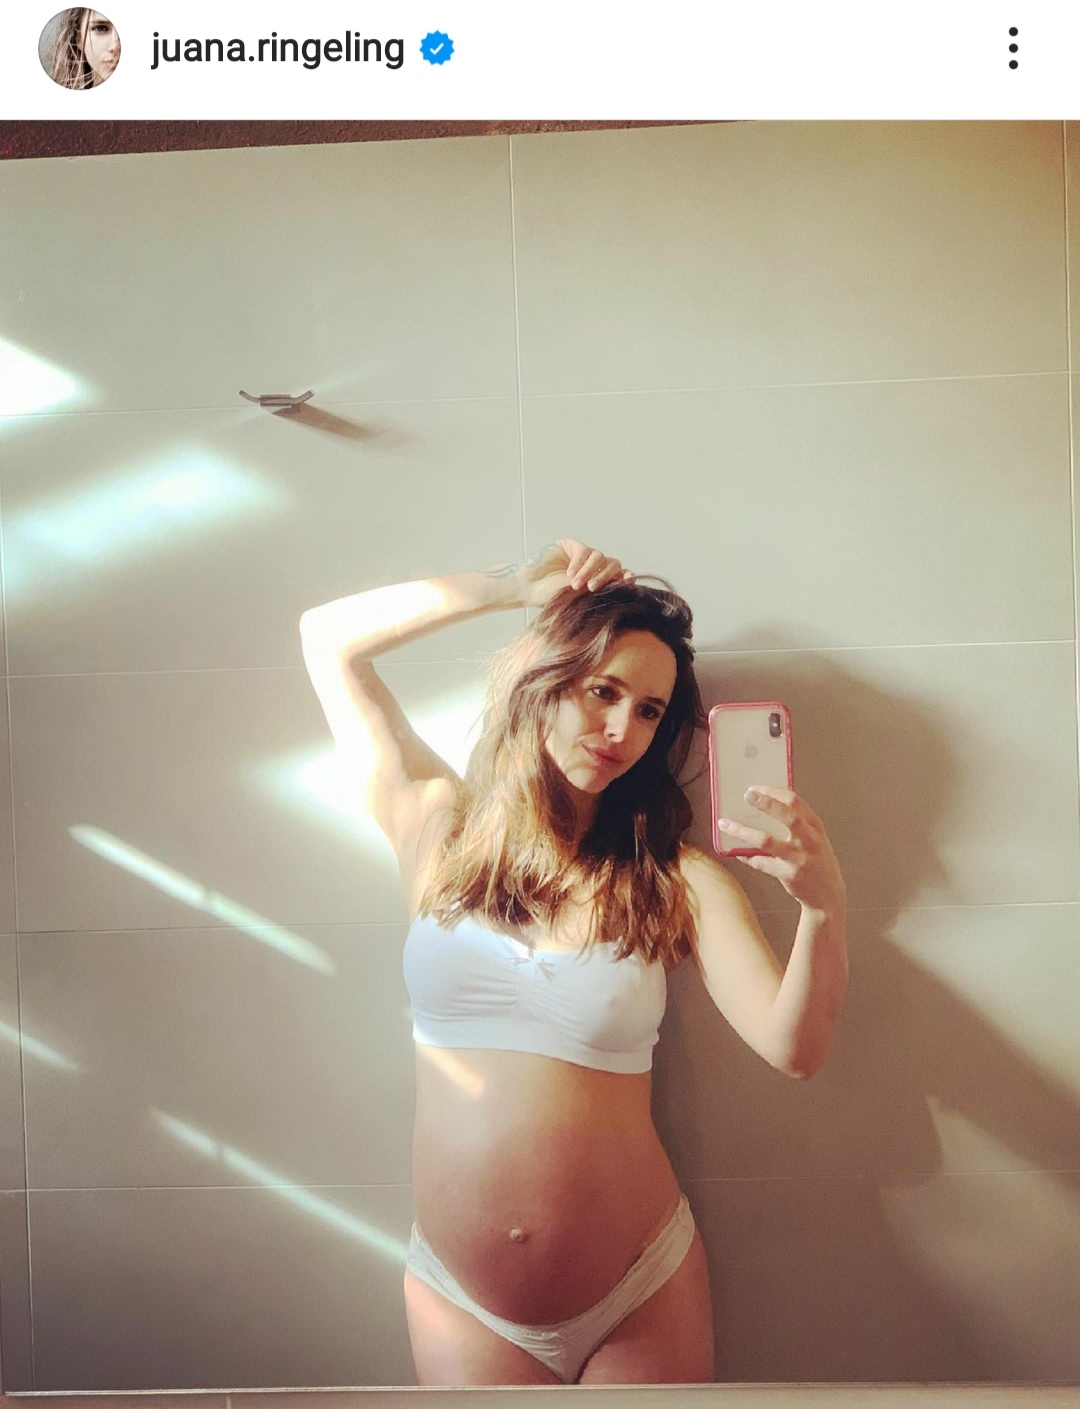 Juanita Ringeling embarazo